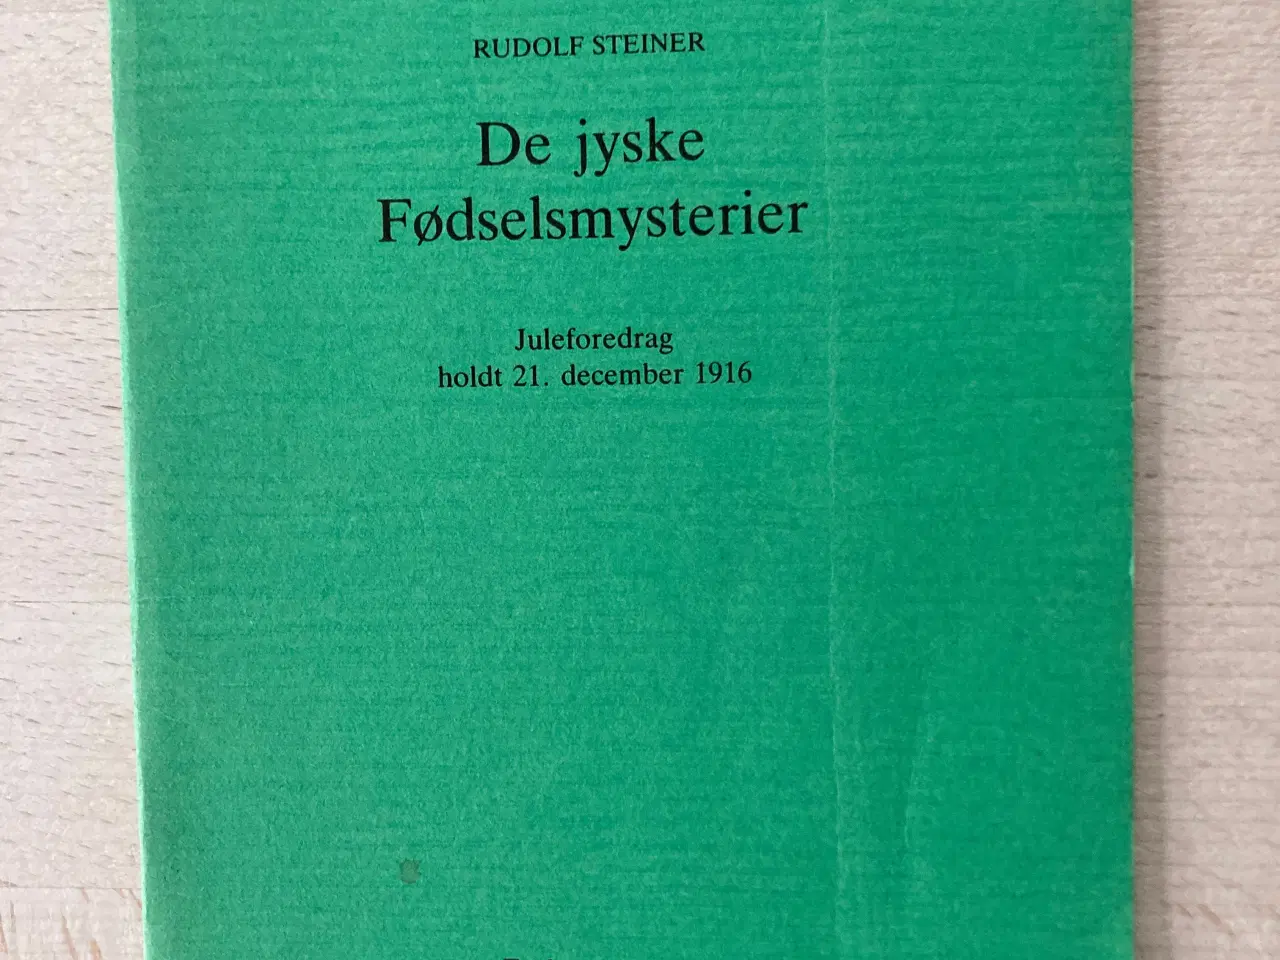 Billede 1 - De jyske fødselsmysterier, Rudolf Steiner